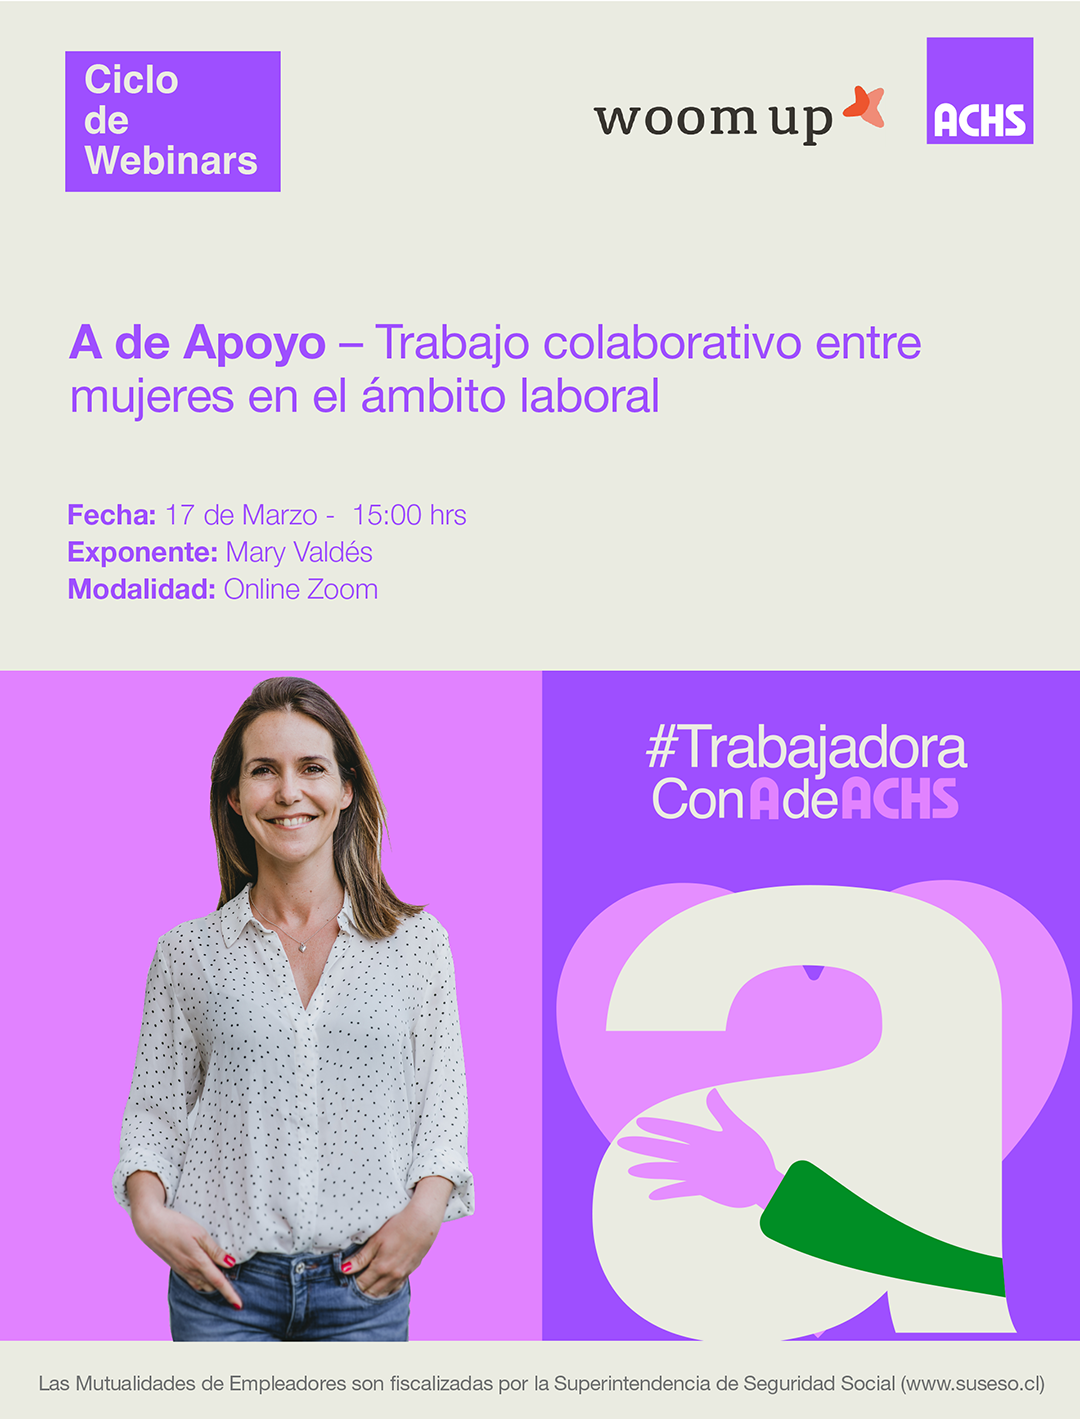 Charla "A" con A de Apoyo "Trabajo colaborativo entre mujeres en el mundo laboral"